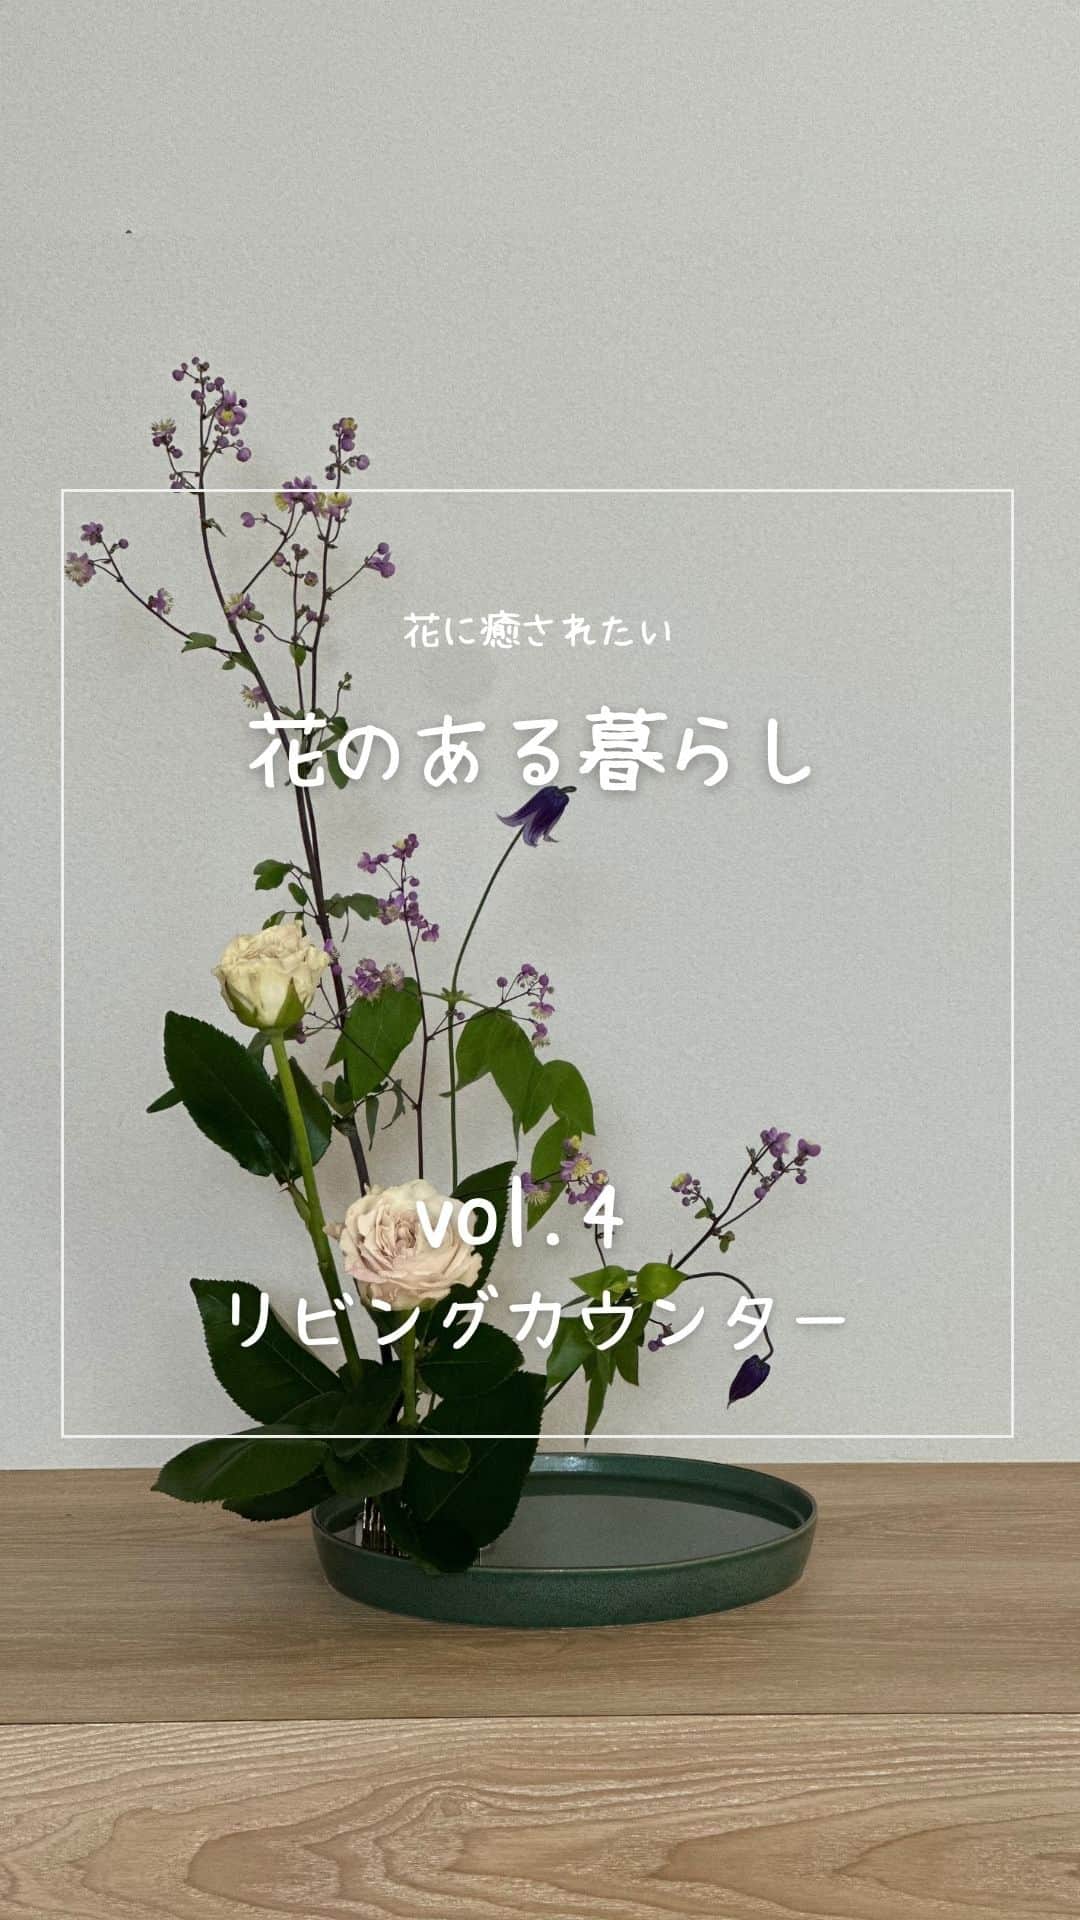 ミサワホーム株式会社のインスタグラム：「@misawahomes⠀ 花に癒されたい。「花のある暮らし」 ＜vol.4＞リビングカウンター  ￣￣￣￣￣￣￣￣￣￣￣￣￣￣￣ ふんわりと枝の先に薄紫色の花をつけているカラマツ草に、優しいニュアンスカラーのバラを合わせました。 ベル鉄線のうつむく姿が儚げです。 バラの澄んだ瑞々しい香りに癒されます。  Flower arrangement artist：Yosuke Yamashita @yosuke.muku1993 @hanamasa.motokeiba  ▼セッティングした展示場はこちら▼ オークラランド展示場 https://www.misawa.co.jp/navi/office/tokyo/177   ￣￣￣￣￣￣￣￣￣￣￣￣￣￣￣￣ #misawahome  #ミサワホーム  #モデルルーム  #モデルルームインテリア  #いけばな  #小原流  #小原流いけばな  #華道  #挿花  #黒い花器  #四季のある暮らし  #花のある生活 #花のある空間 #花のある部屋 #花のある暮らし🌼  #花と暮らす #季節のある暮らし  #季節の花を楽しむ  #はなすたぐらむ #花遊び #ohararyuu #ikebana #紫陽花が好き #パピルス #シペラス #カヤツリグサ #ヒメトラノオ #ペンダント照明  #タイムラプス  #タイムラプス動画」